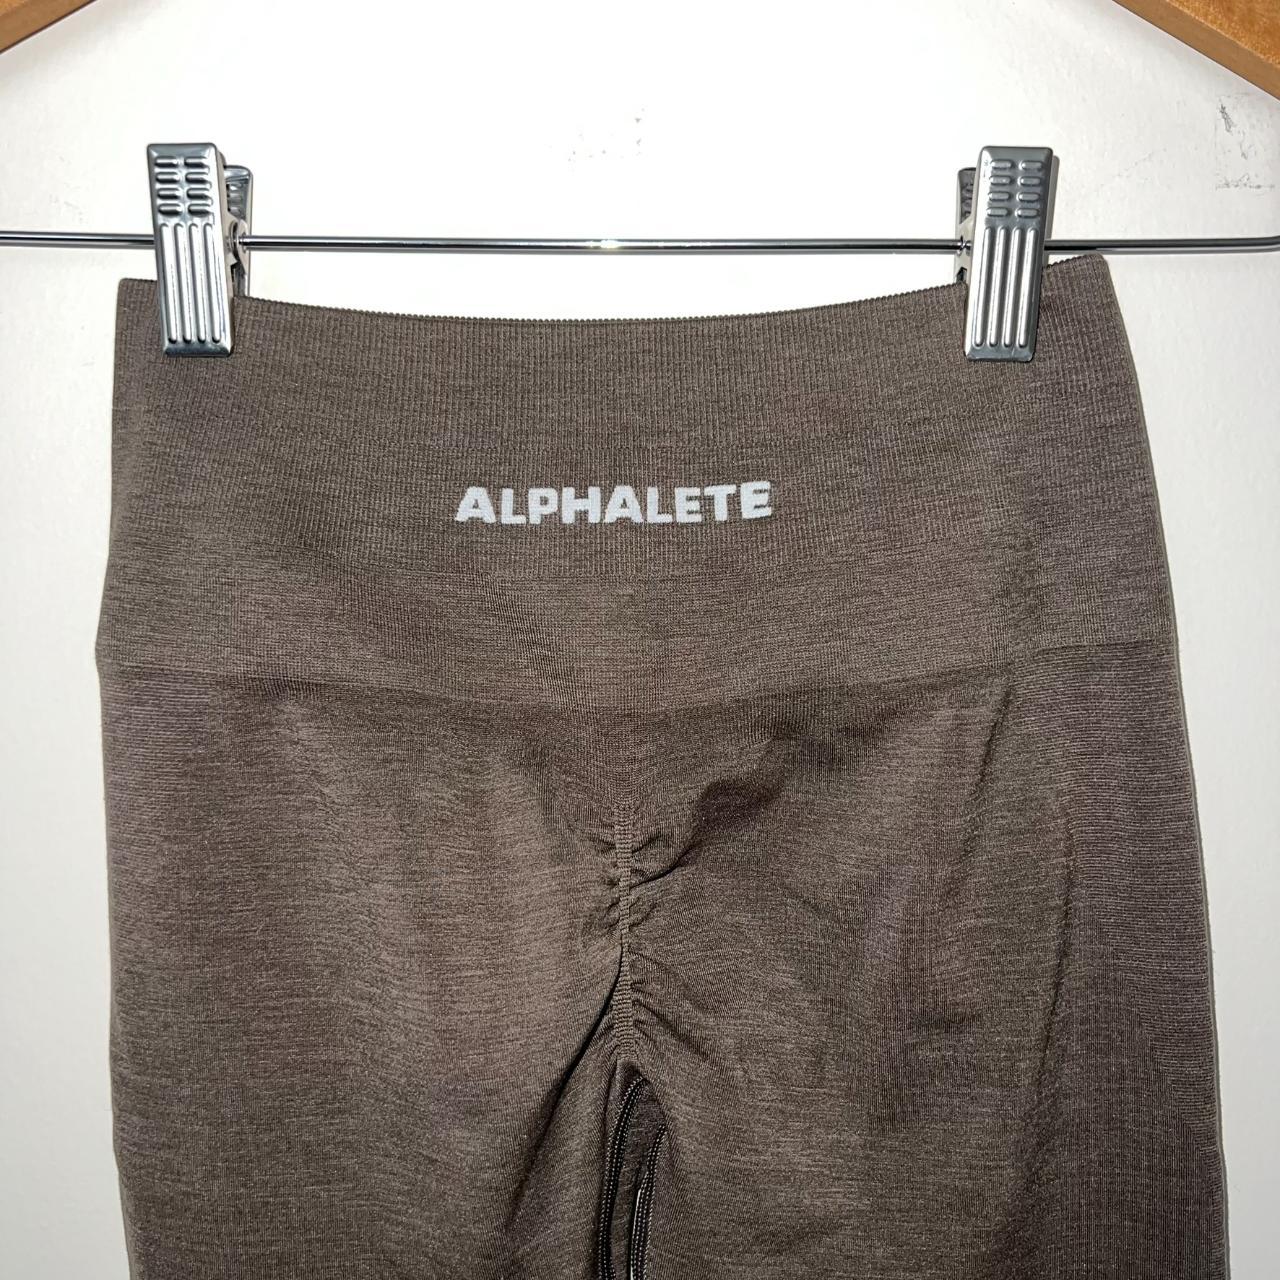 LOOKING for alphalete amplify leggings in black/ jet - Depop